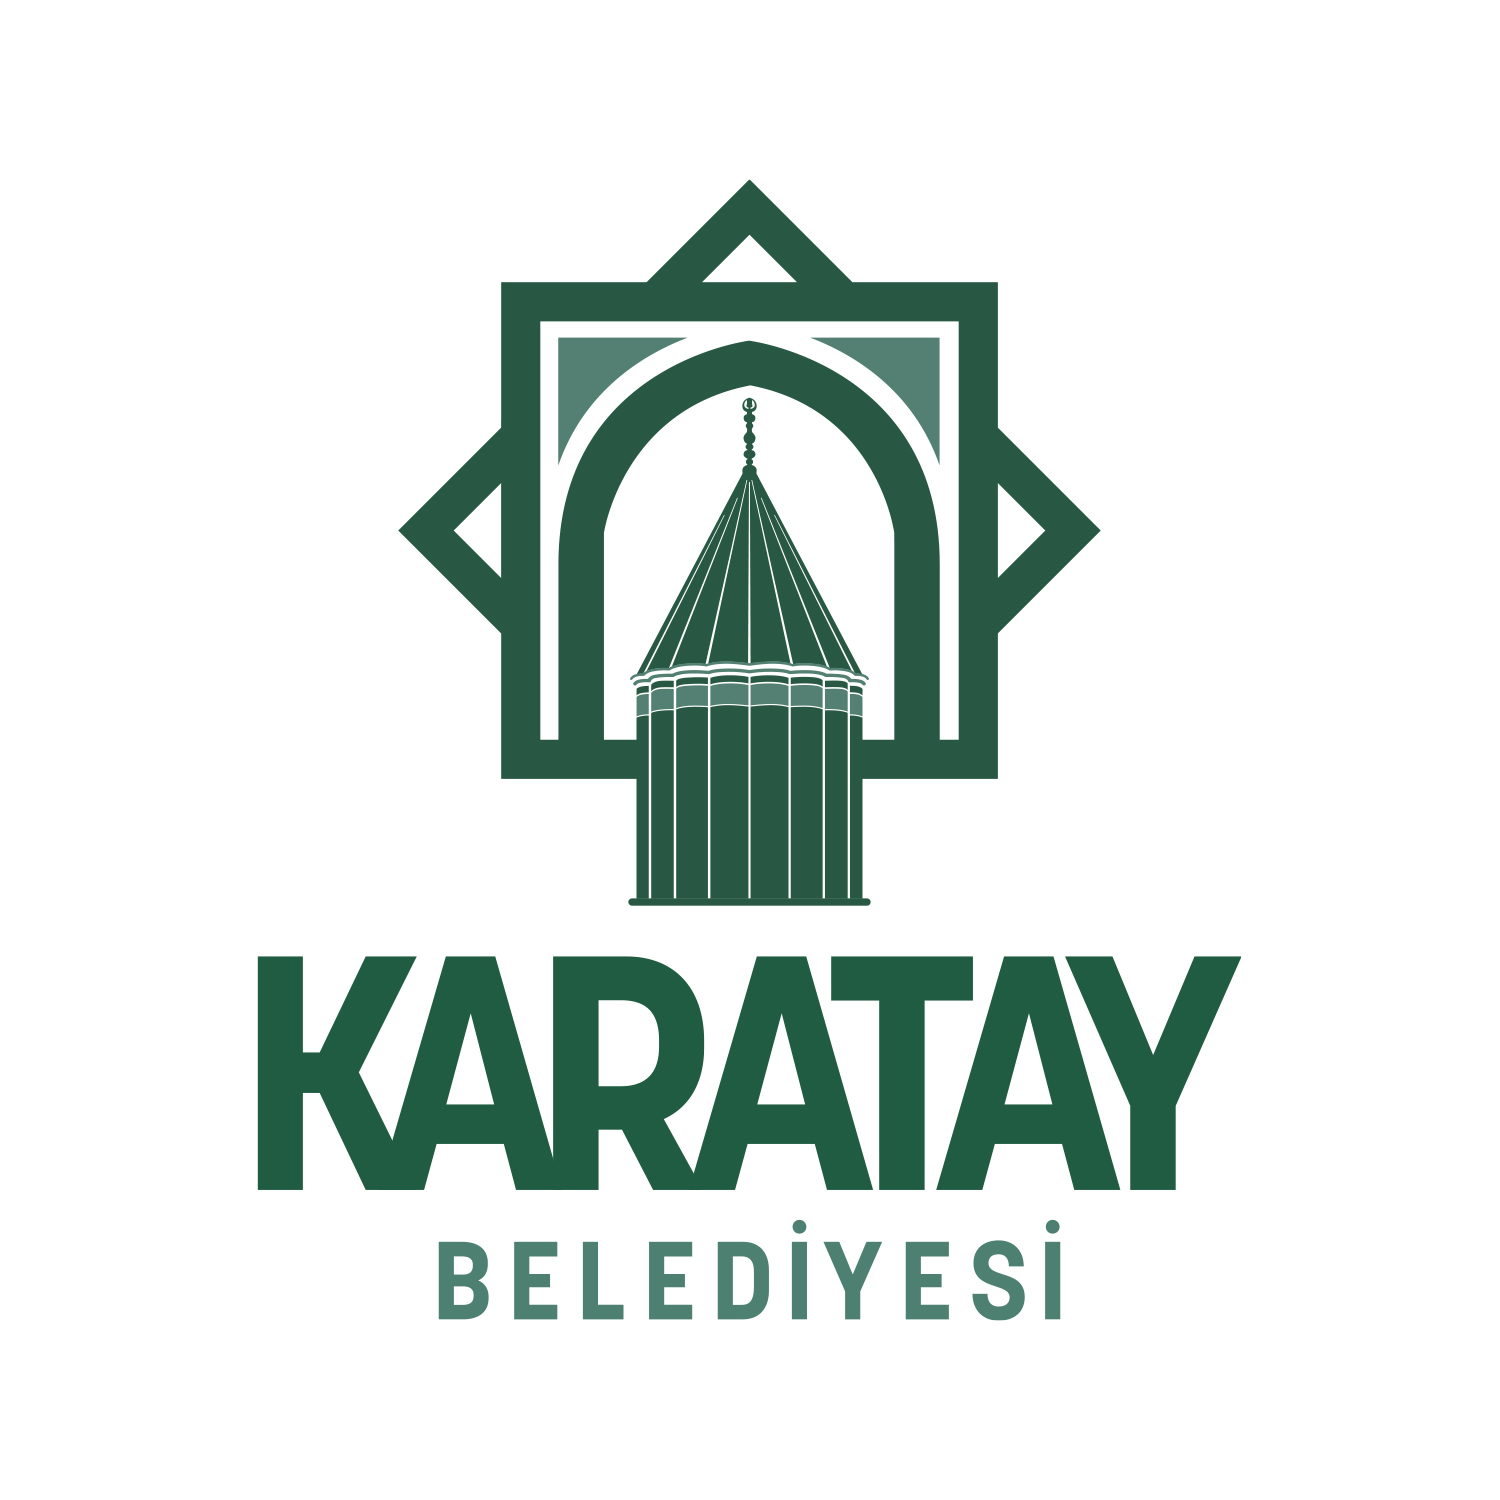 Karatay Municipality